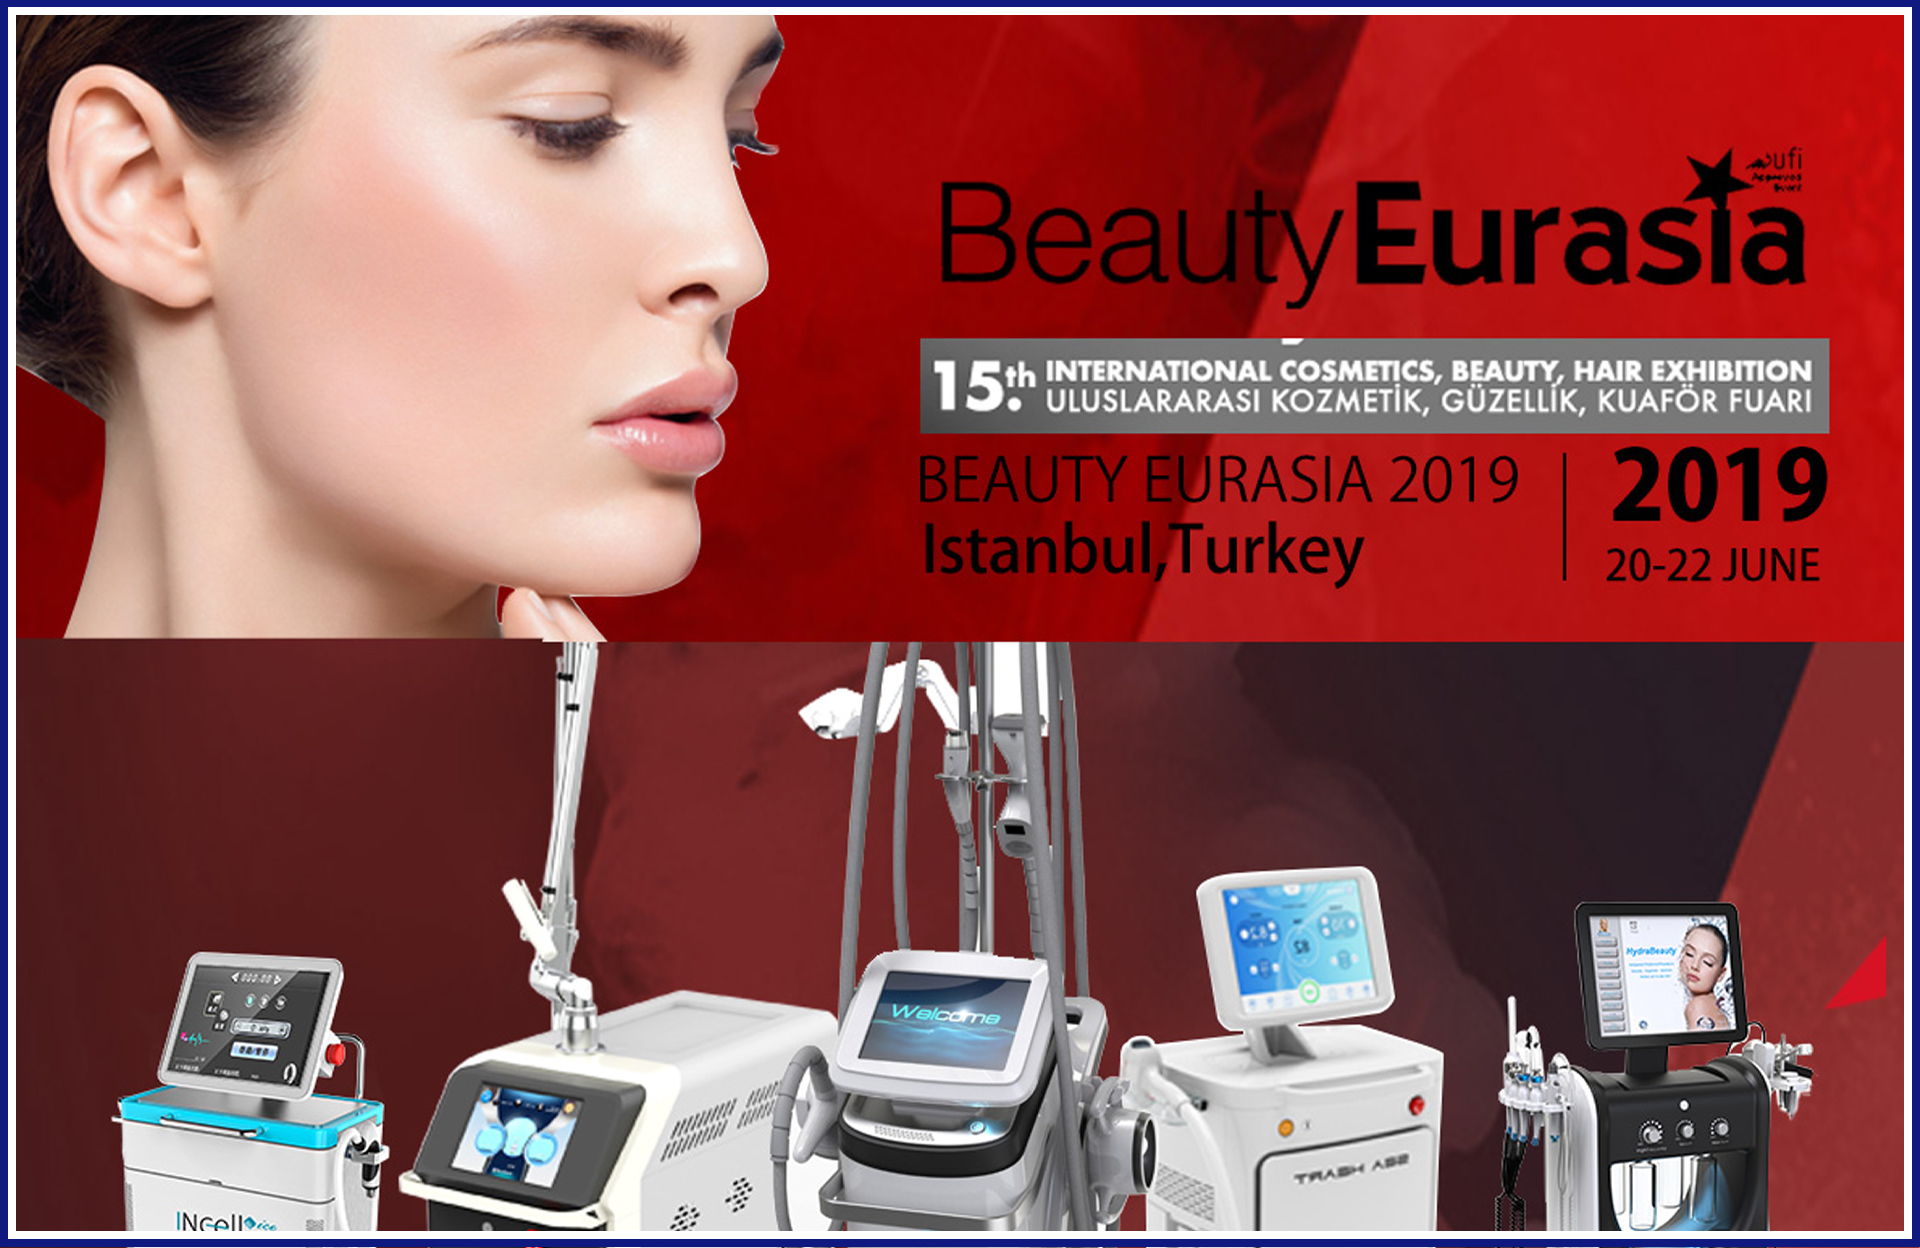 Turkey Beauty Eurasia Fair in Istanbul Turkey 2019